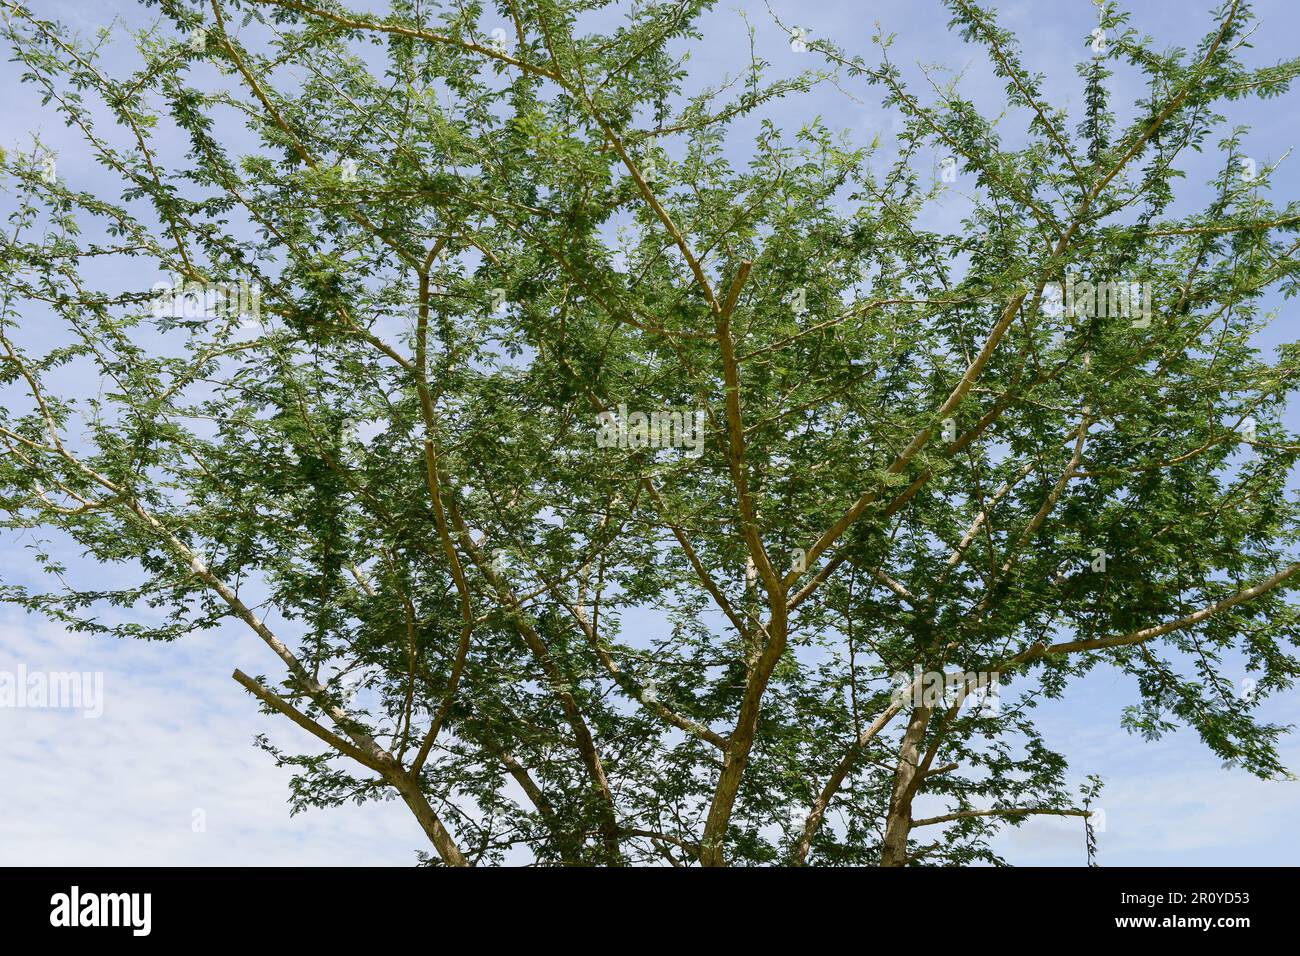 TCHAD, région du Sahel, Guéra, ville de Mango, Acacia Senegalia arbre du sénégal, la résine d'arbre est utilisée comme Gum Arabic E414 pour l'industrie alimentaire et des boissons, par exemple Cocoa Cola comme stabilisateur / TSCHAD , Baum Acacia Sénégal, das Harz des Baumes ist Gummi Arabikum bekannt als Stabliisierer E 414 in der Lebensmittel- und Getränkeindustrie u.a. für Coca Cola Banque D'Images